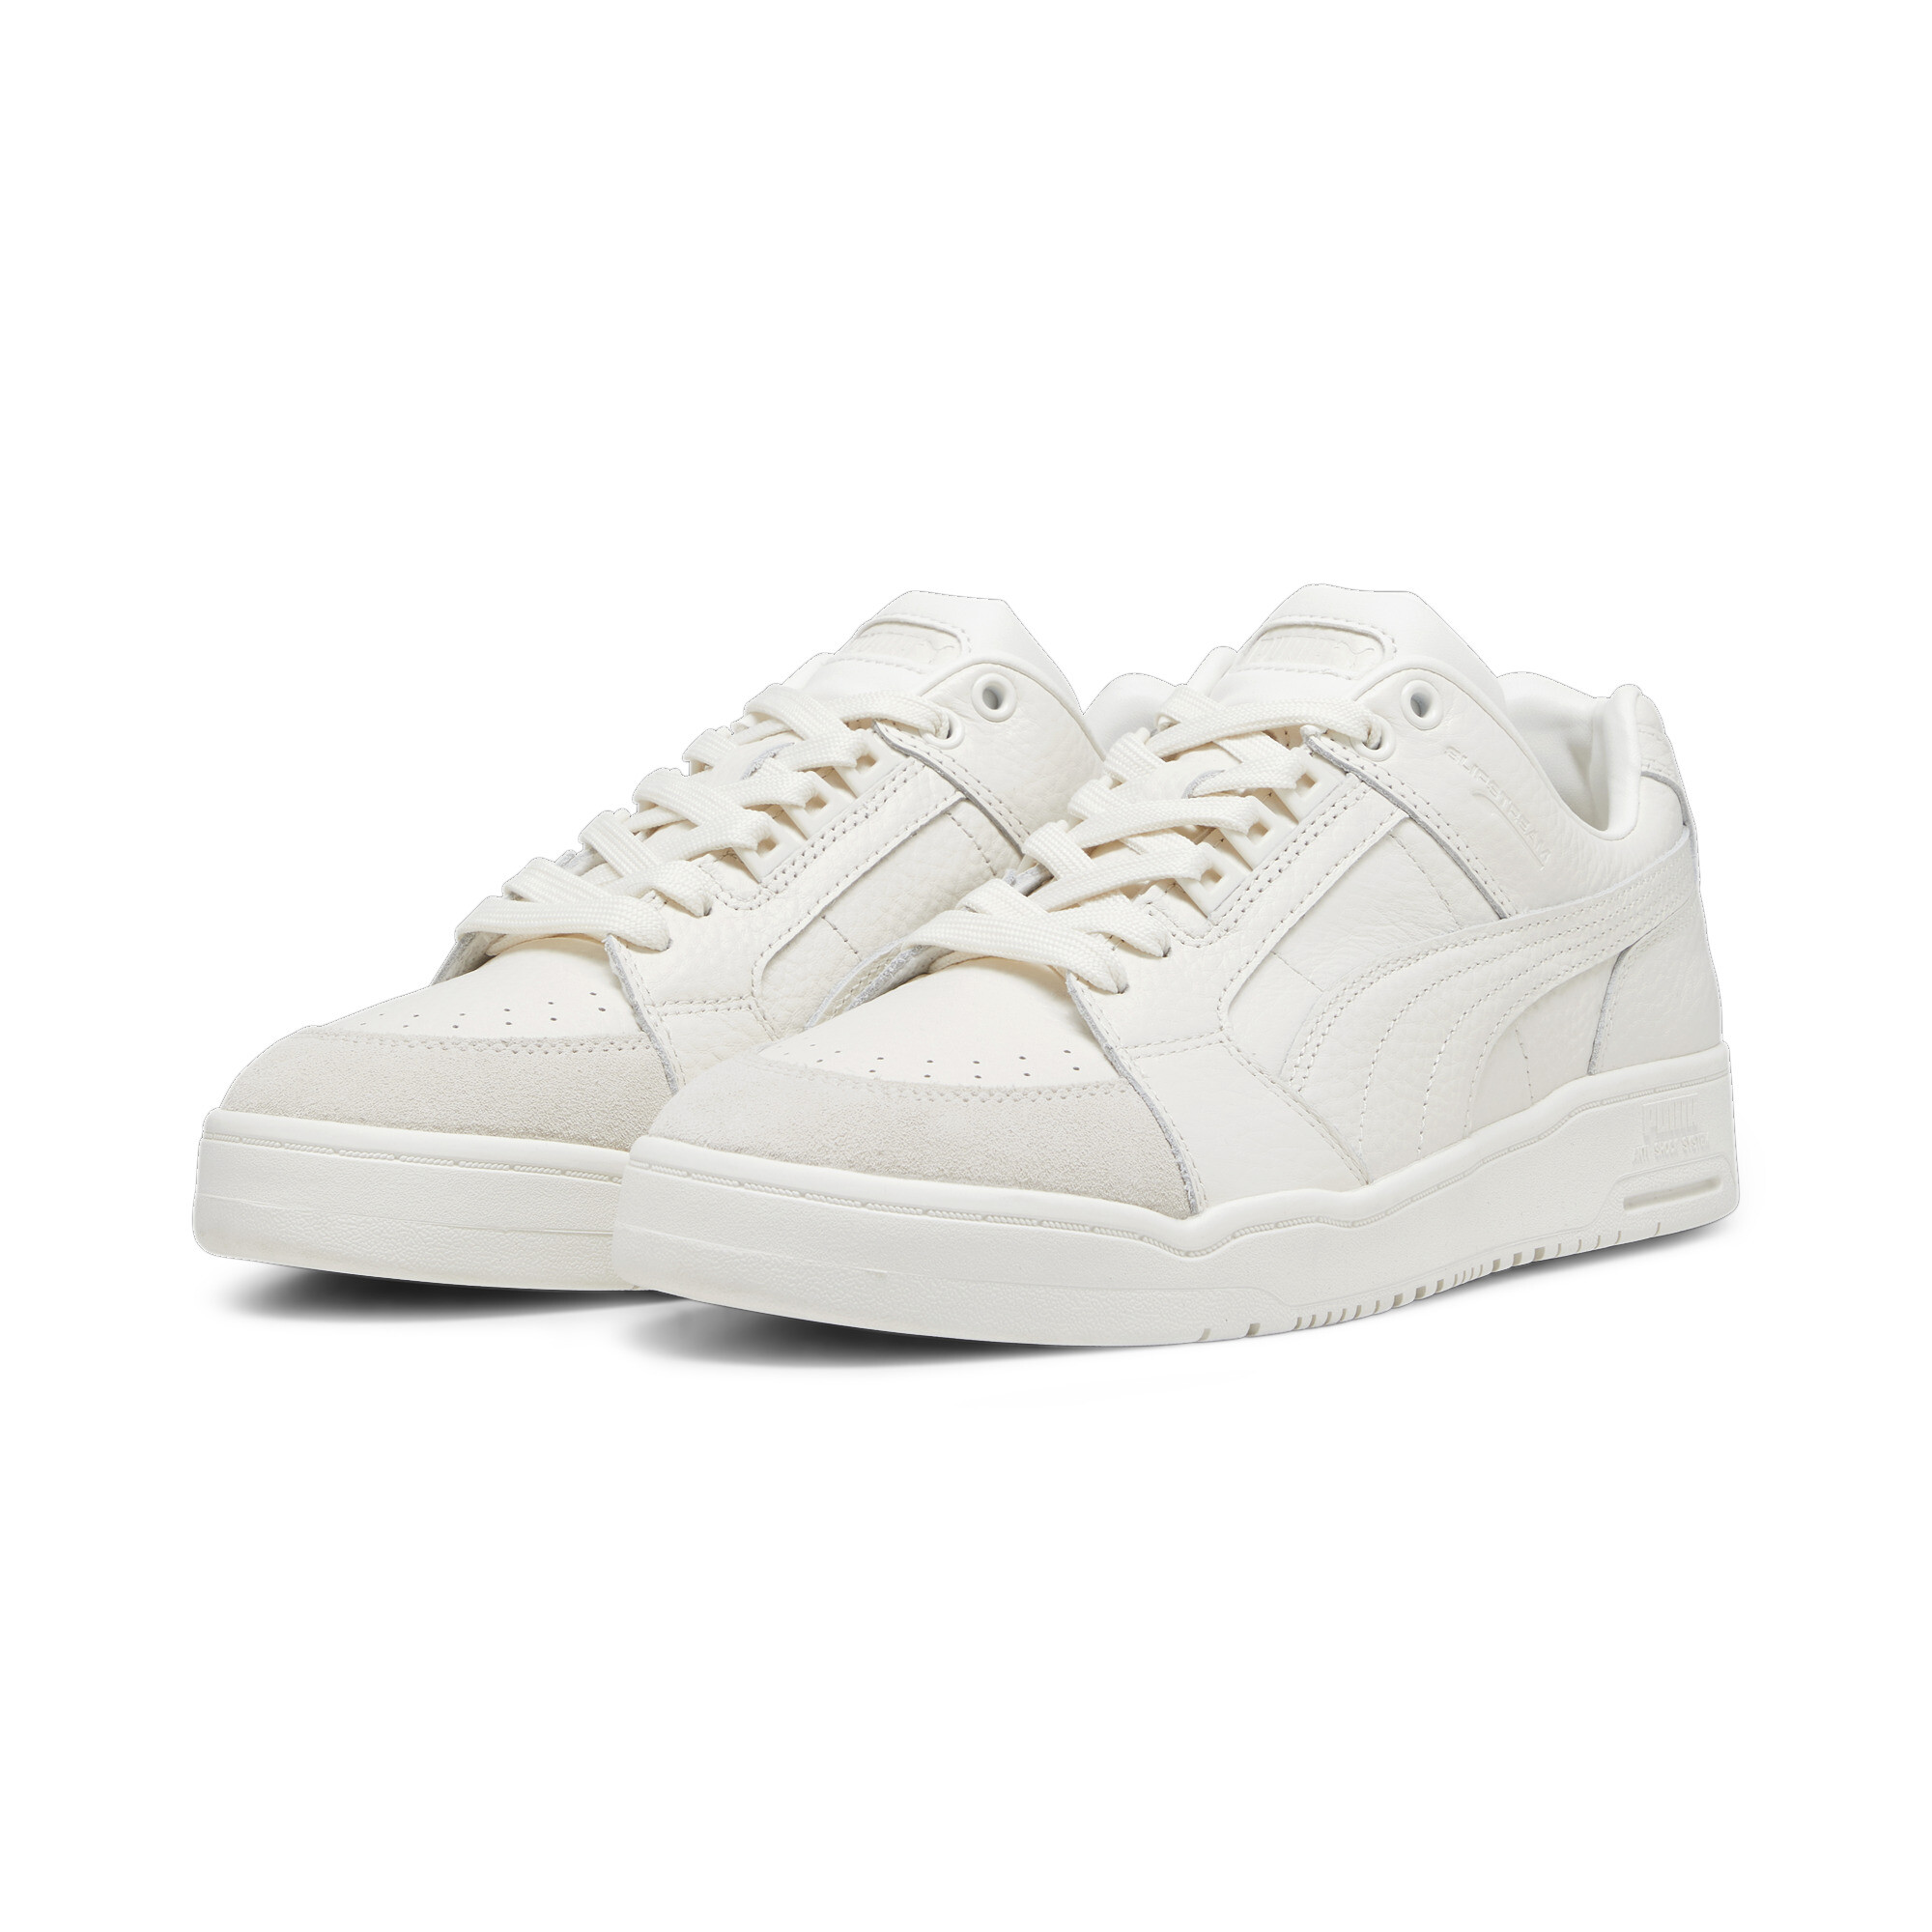 Puma Slipstream Lo Premium Sneakers, White, Size 38, Shoes